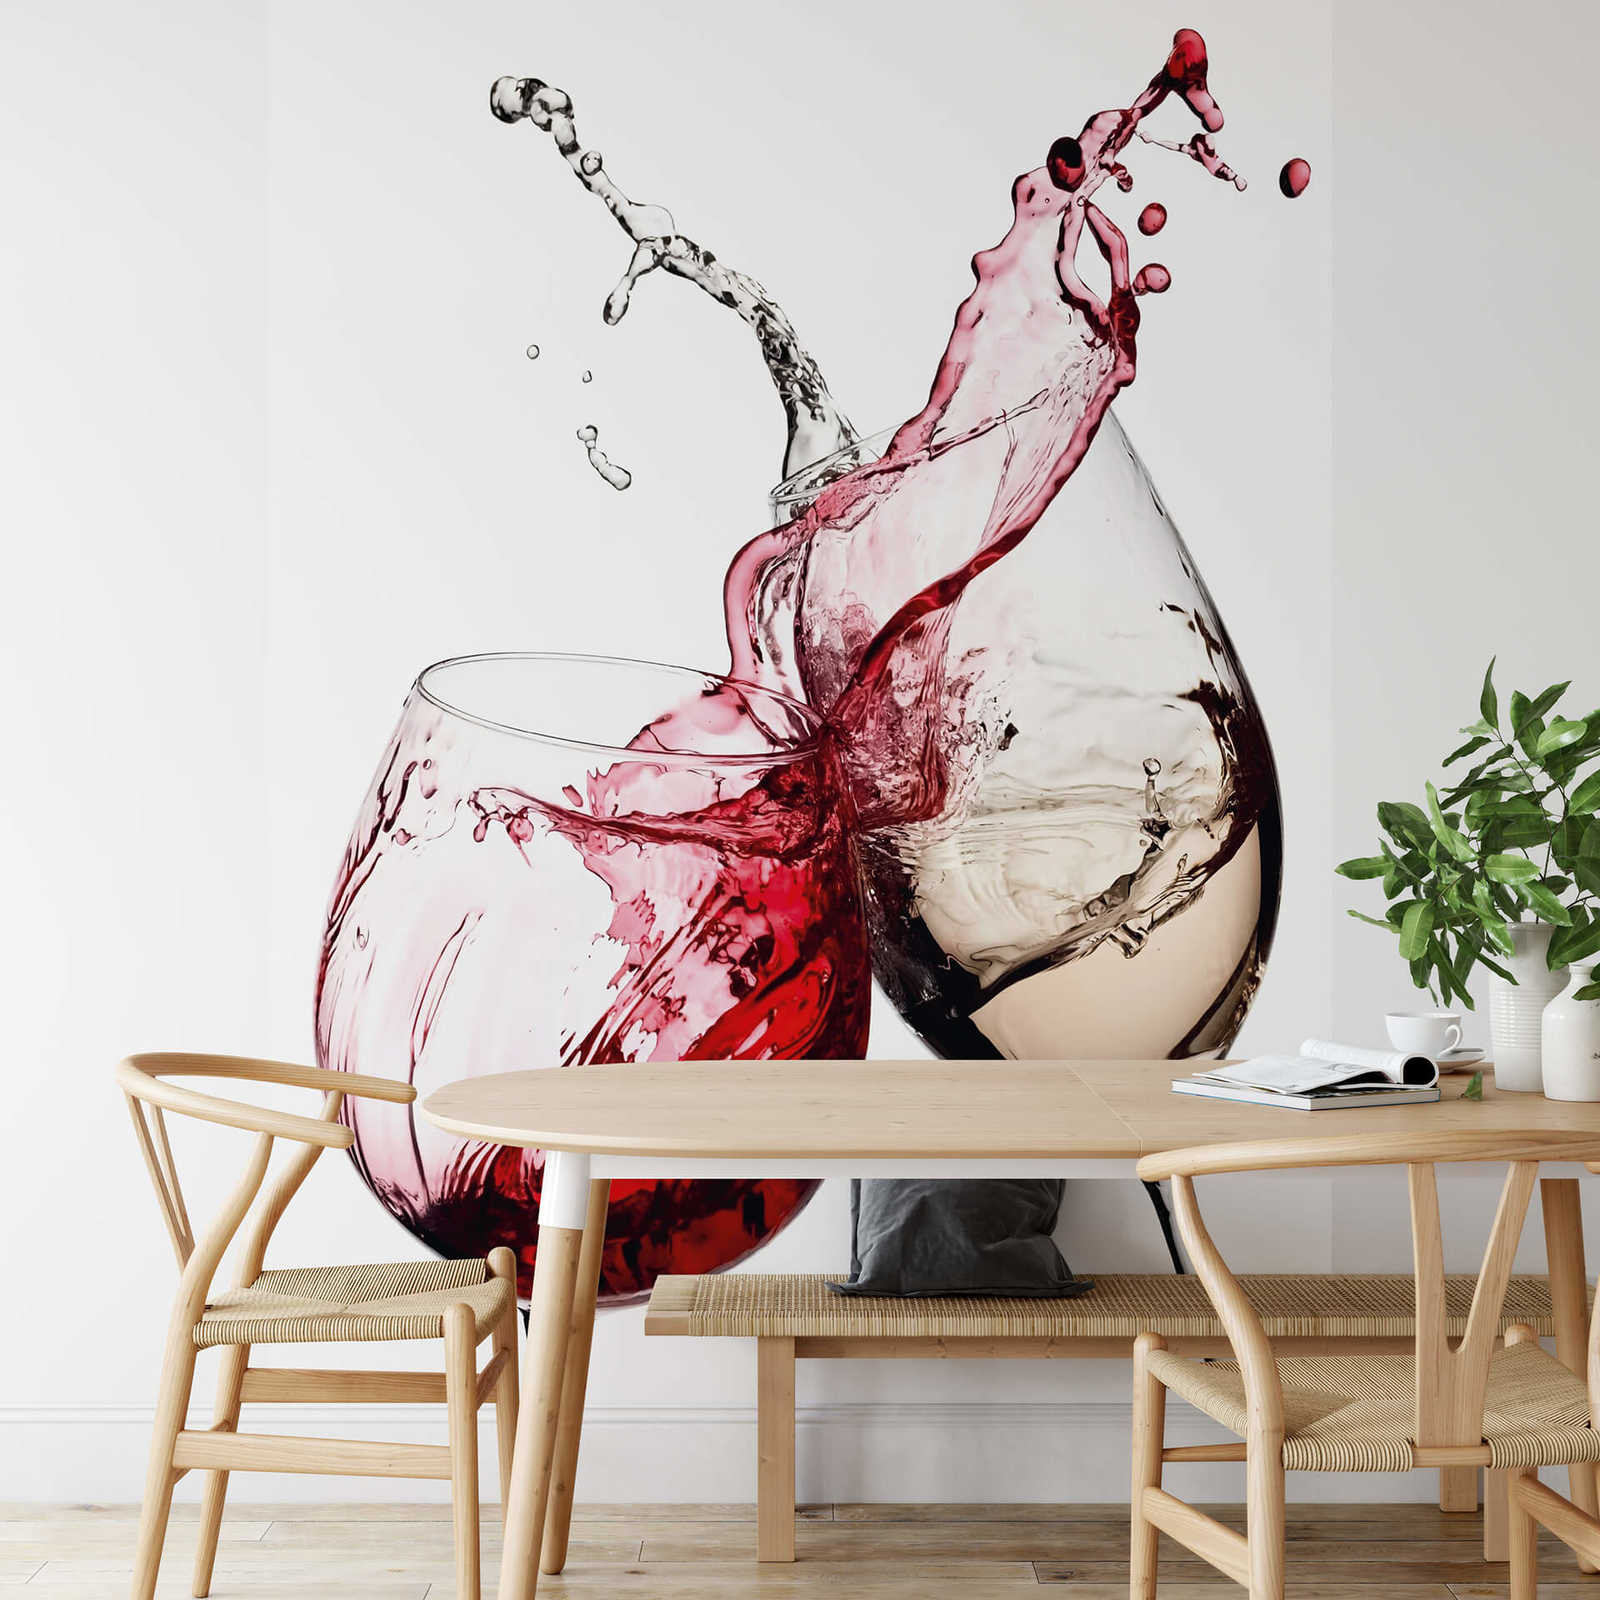             Papier peint vin Verres à vin rouge et blanc
        